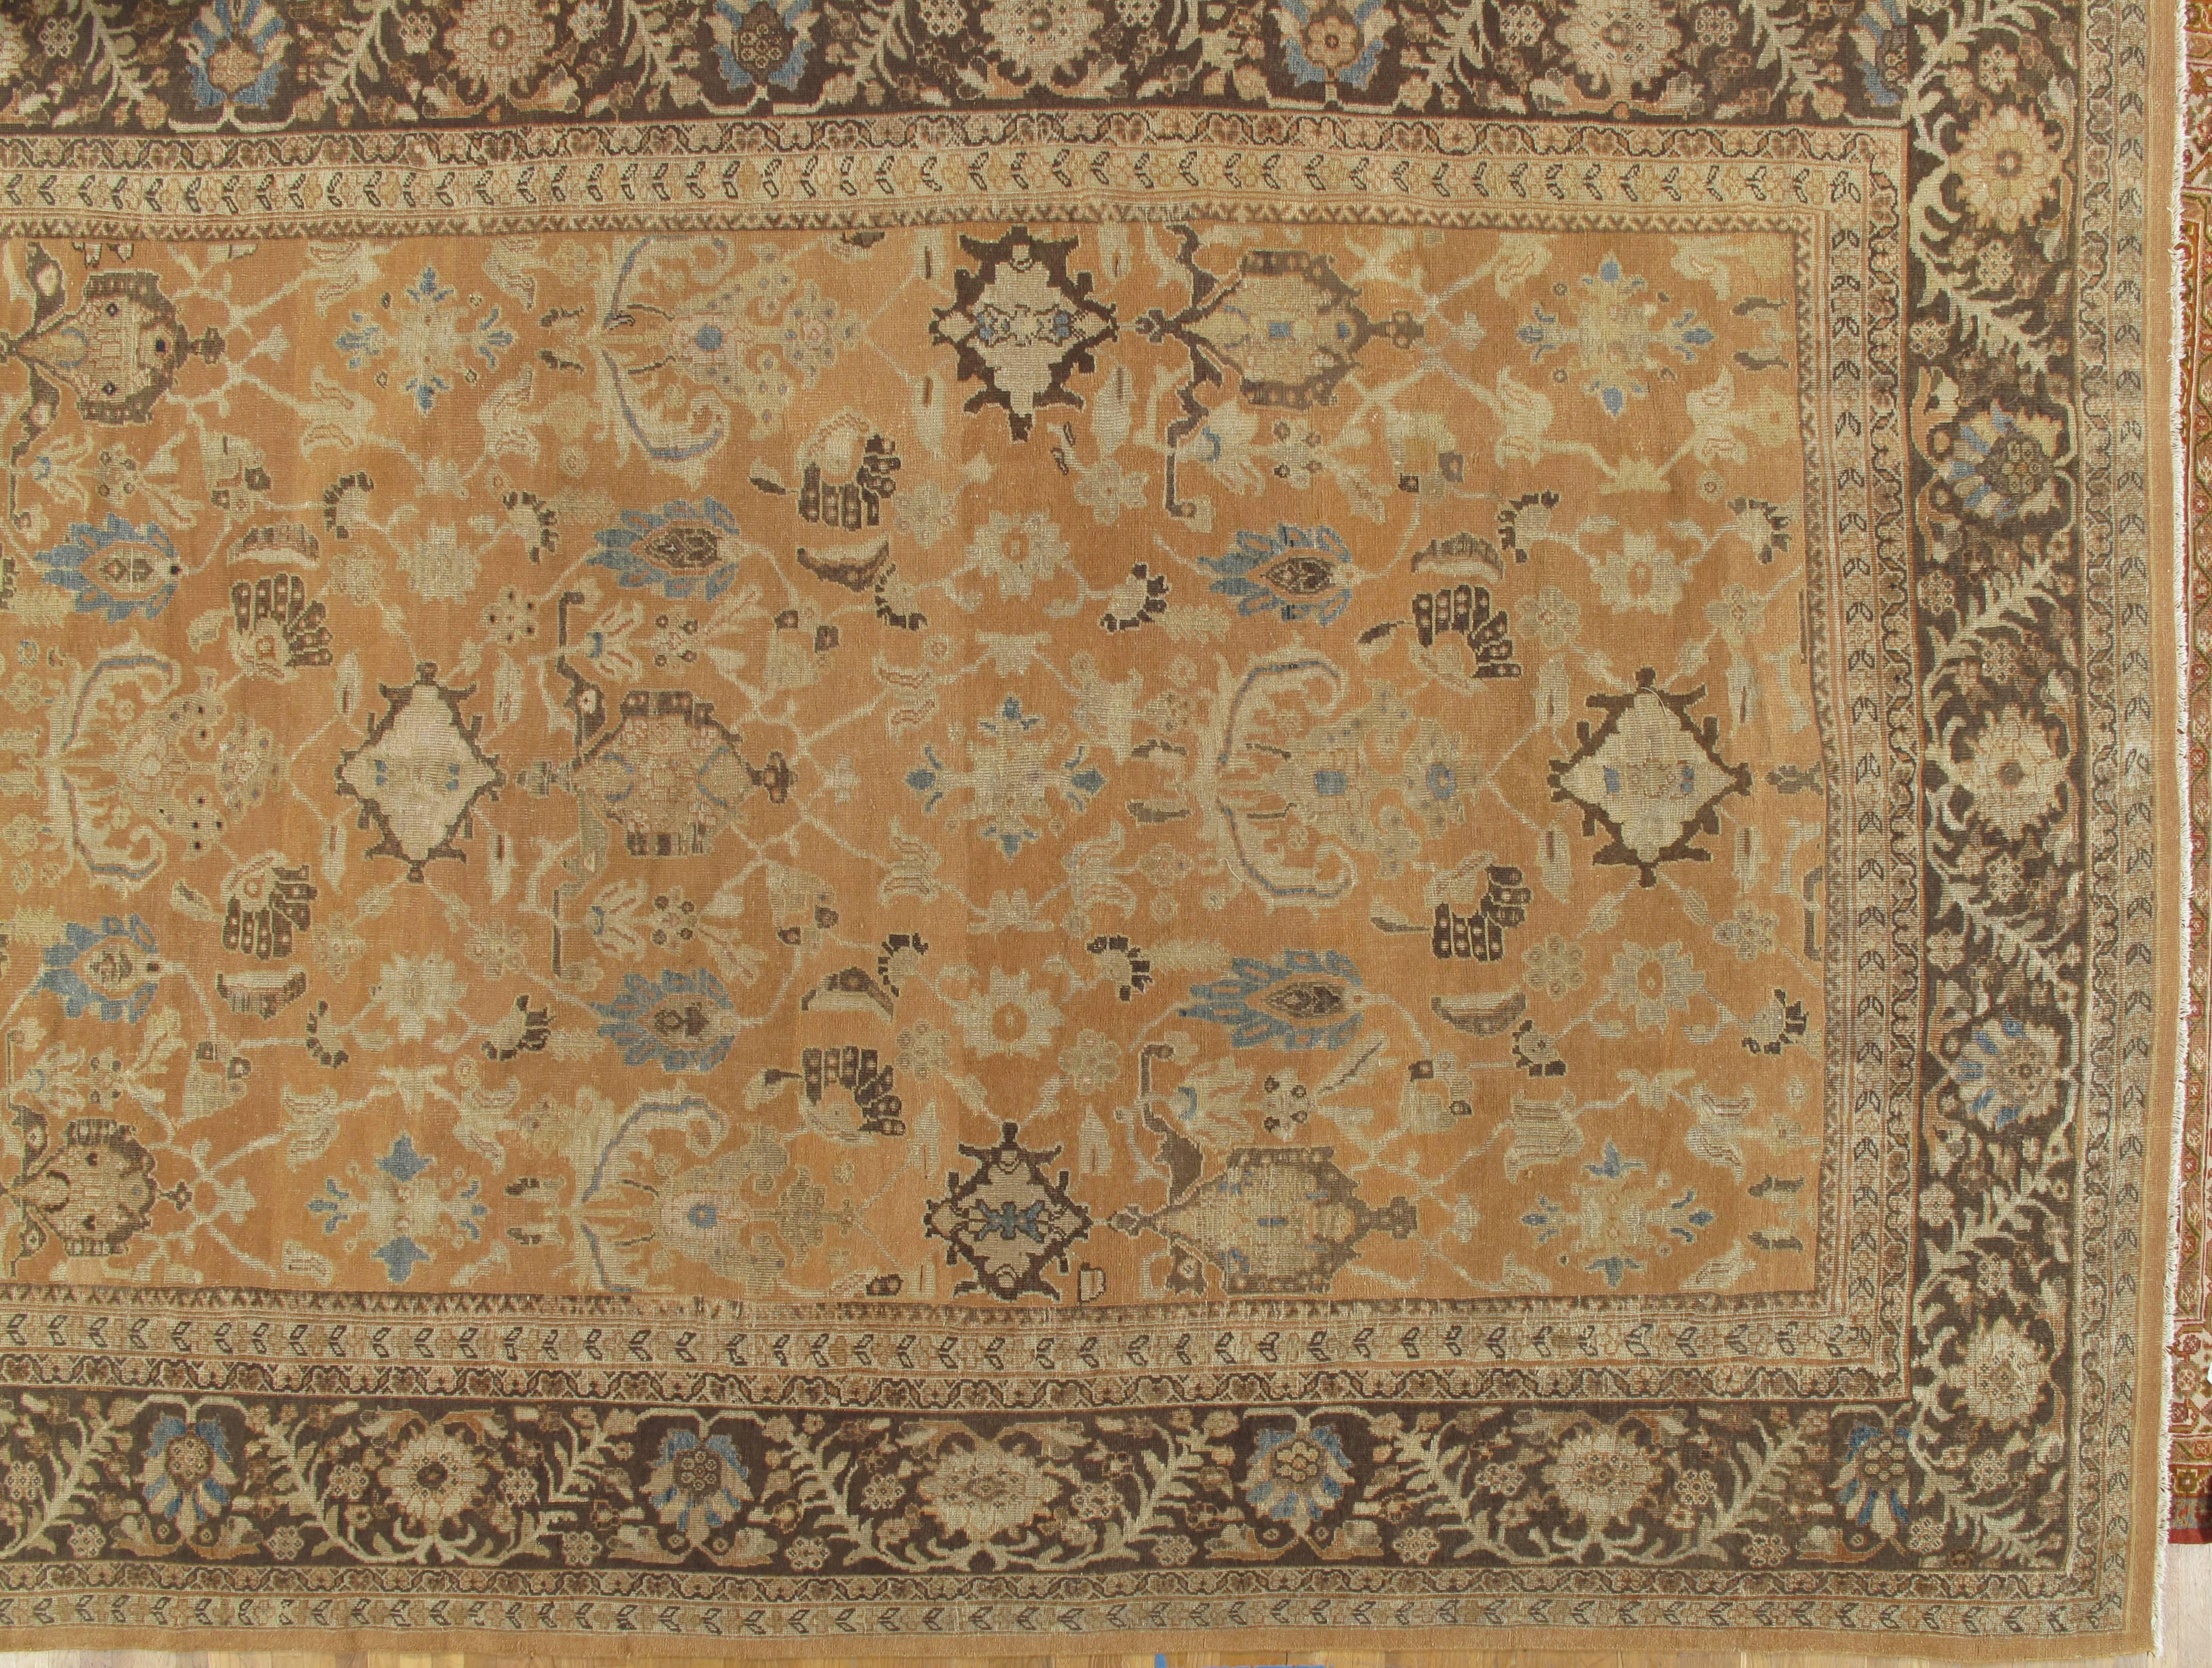 En 1883, Ziegler and Co. de Manchester, en Angleterre, a établi une manufacture de tapis persans à Sultanabad, en Iran, en employant des designers des grands magasins occidentaux, comme B. Altman et Liberty de Londres, pour modifier les dessins